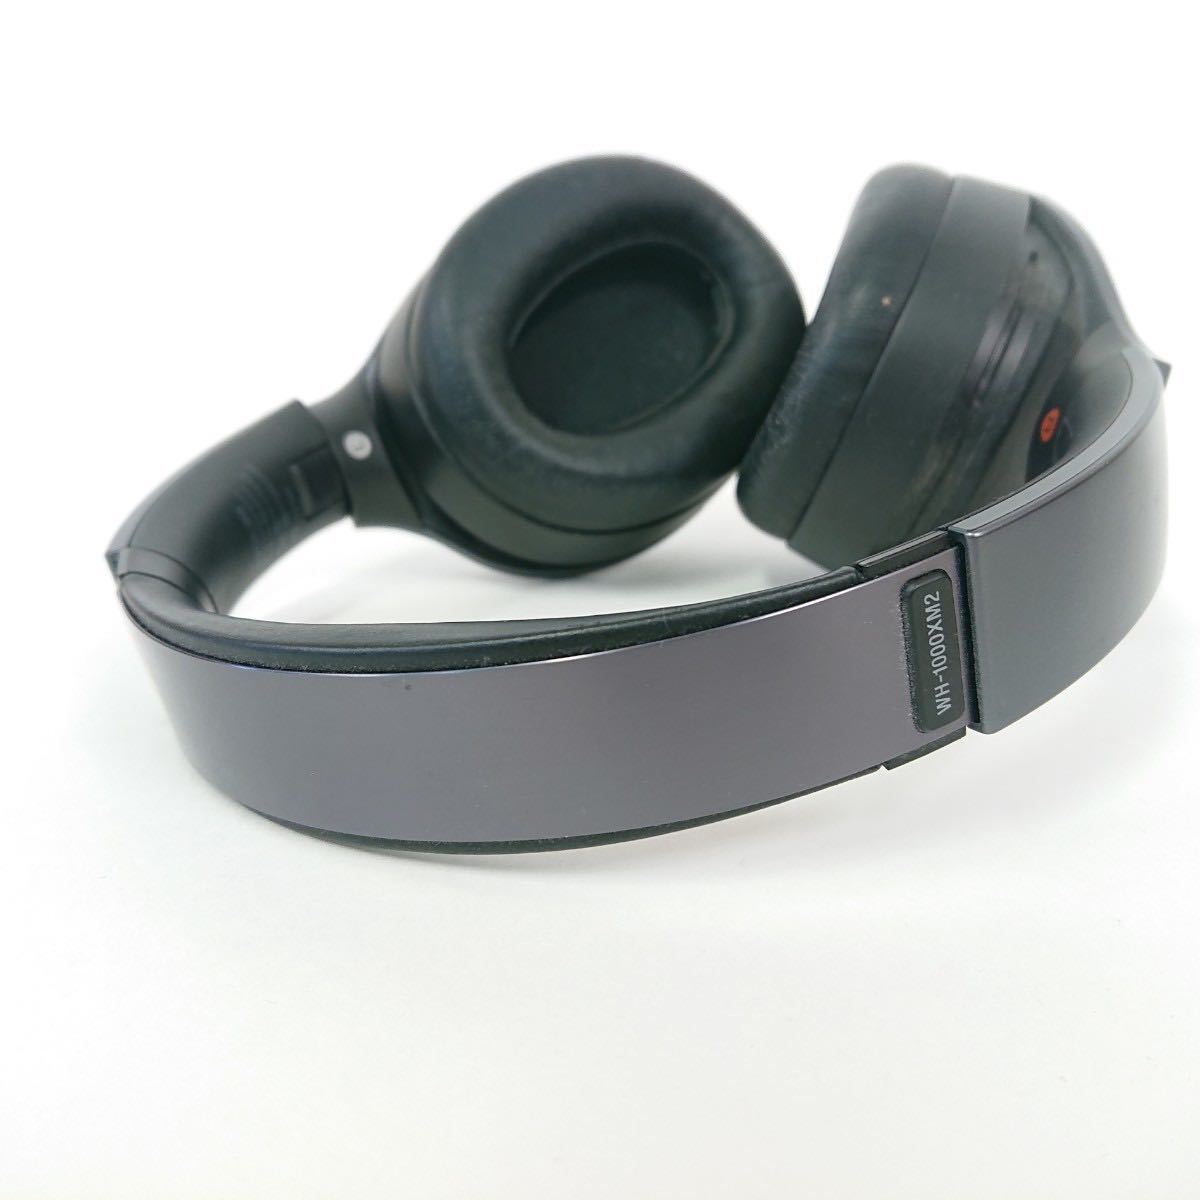 【音出し◎】『SONY ソニー WH-1000XM2 ヘッドセット ワイヤレス ノイズキャンセリング ヘッドホン ブラック 取説付き』イヤホン Bluetooth_画像7